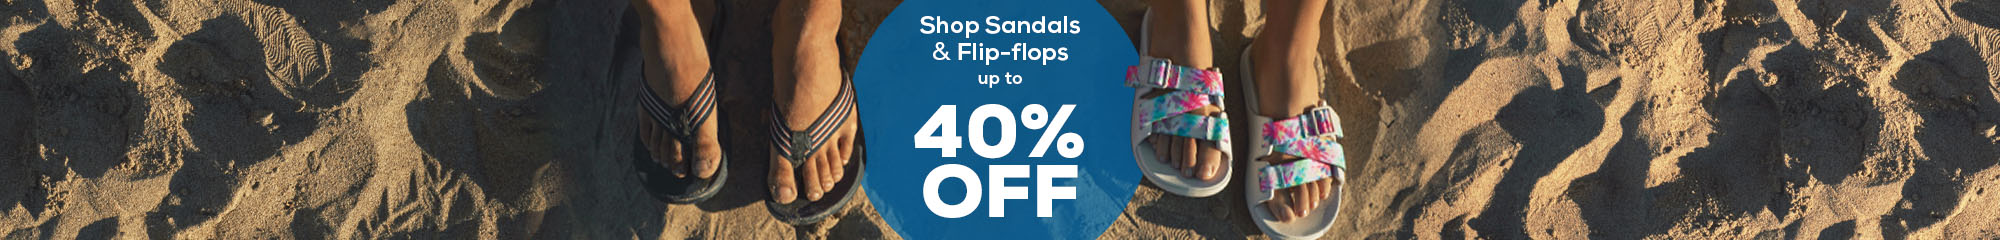 shop sandals & flip-flops up to 40% off